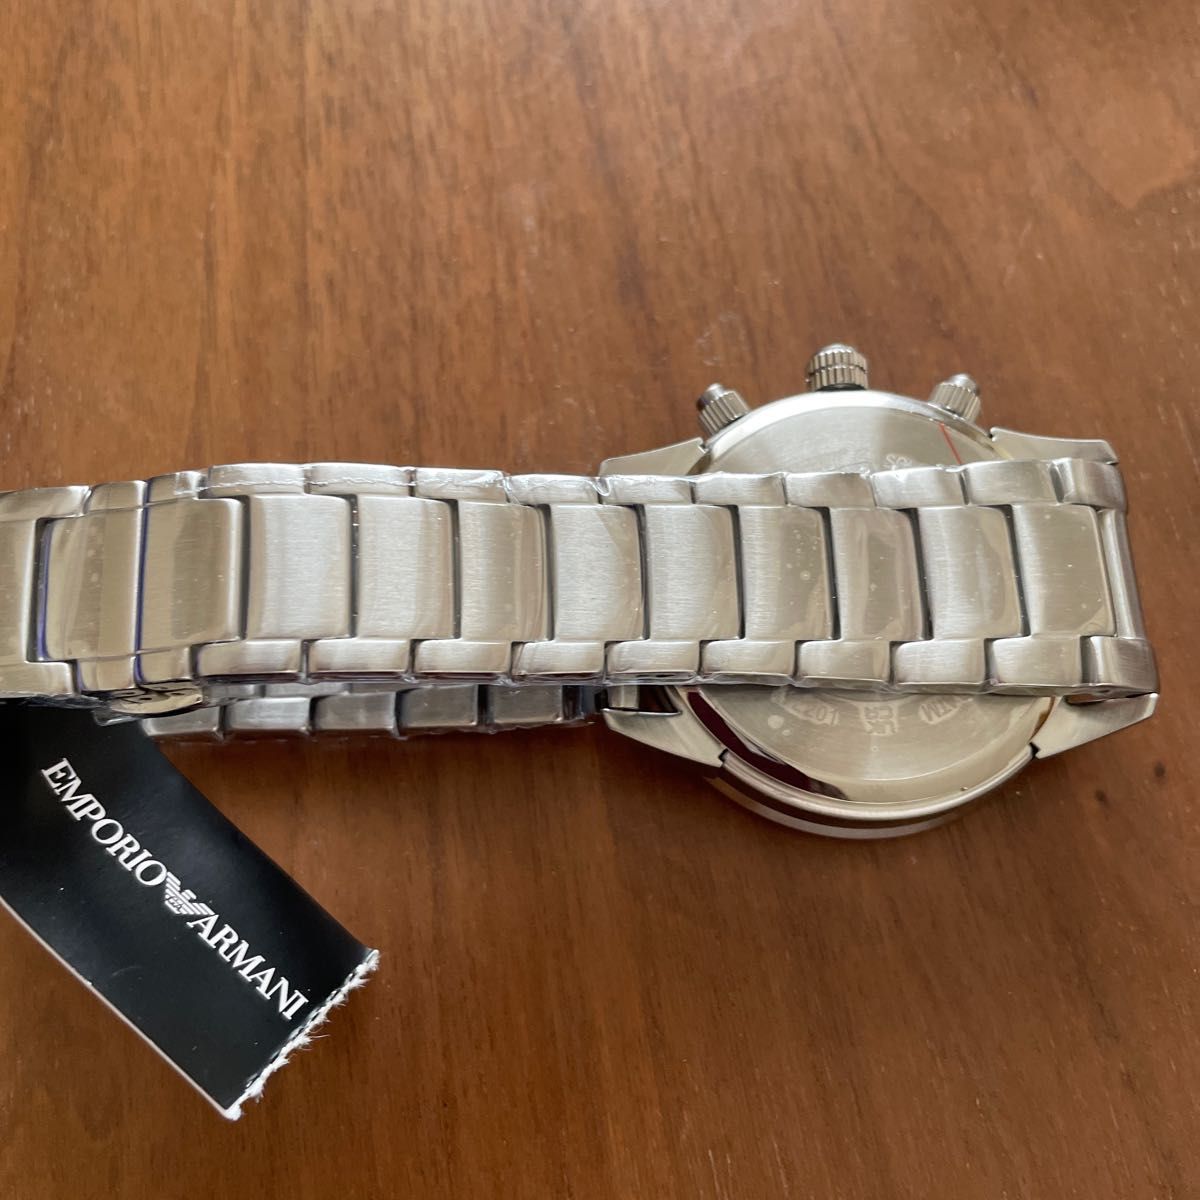 新品未使用品 エンポリオアルマーニ AR11306 ブルー メンズ腕時計